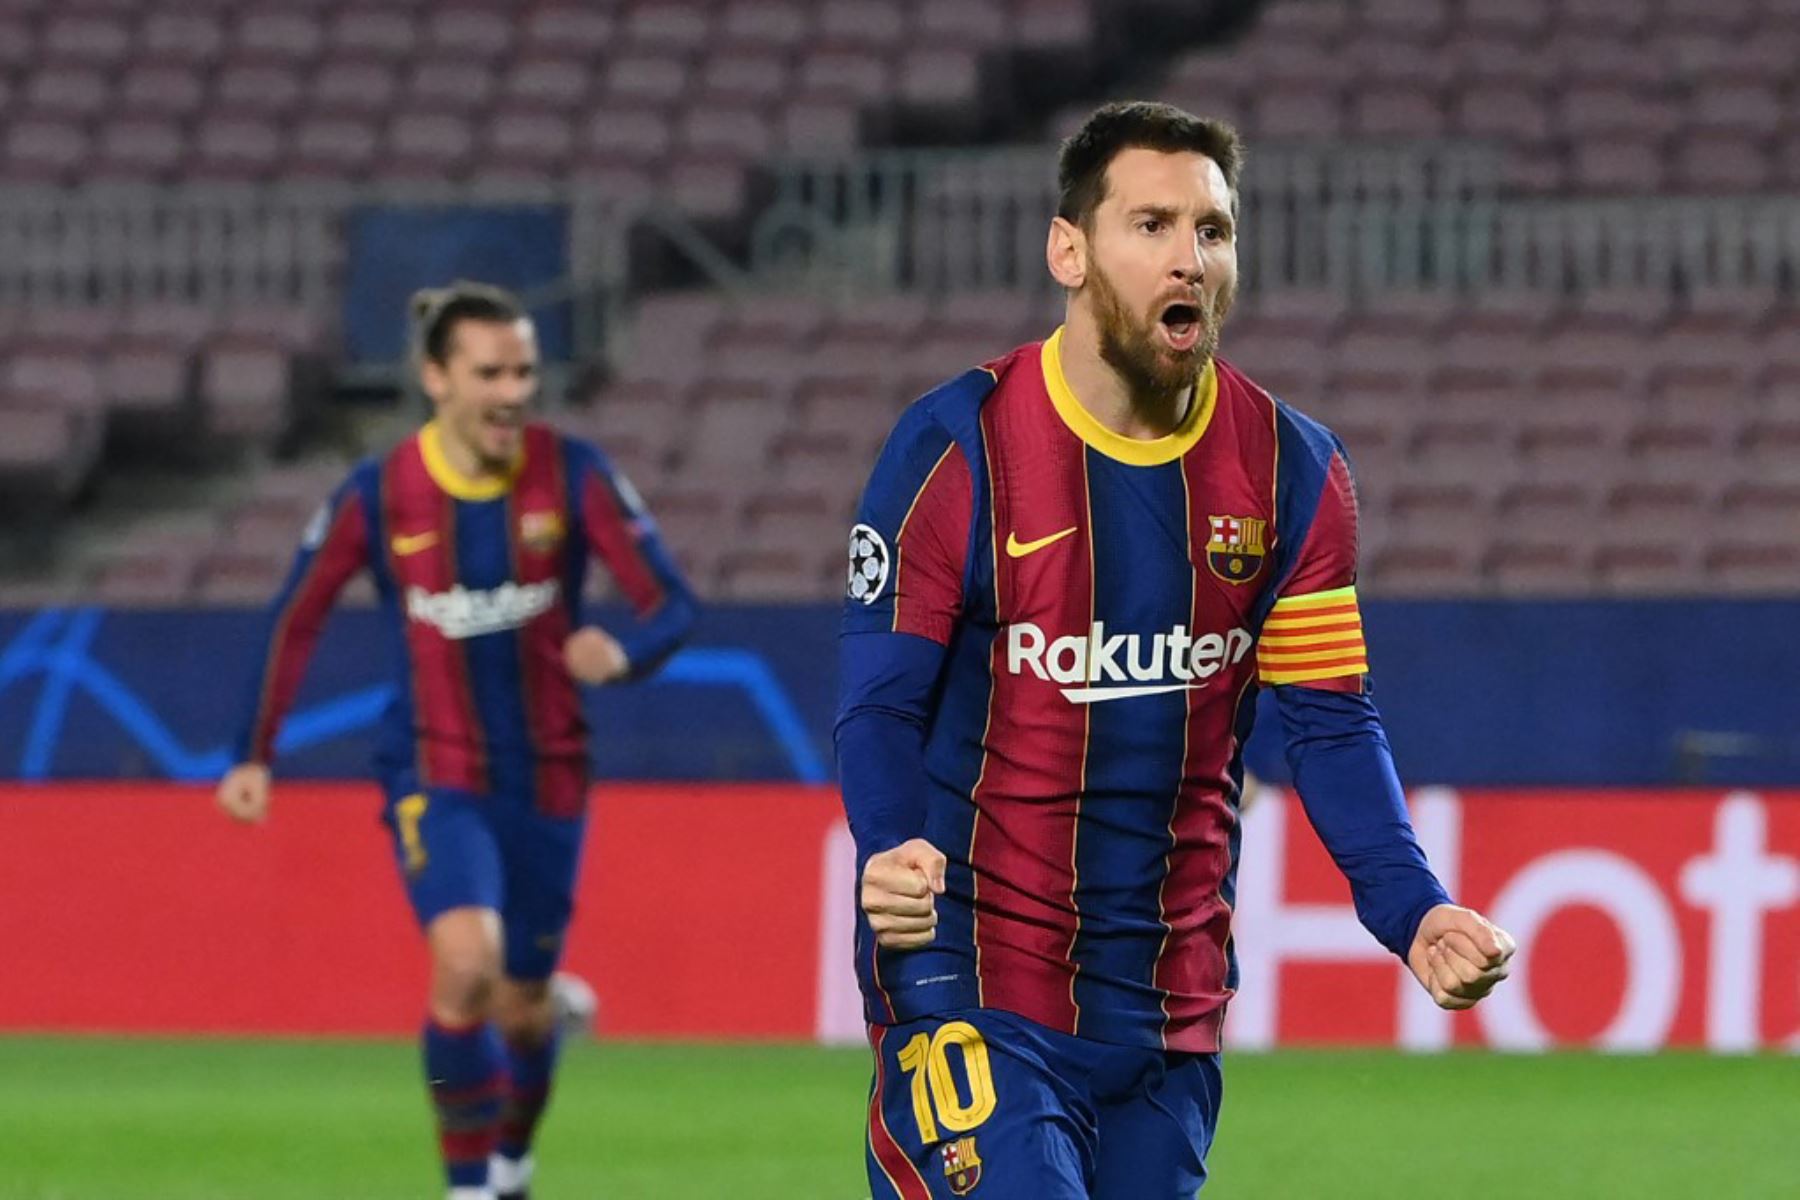 El delantero argentino del Barcelona Lionel Messi celebra tras marcar un gol durante el partido de ida de los octavos de final de la Liga de Campeones de la UEFA entre el FC Barcelona y el Paris Saint-Germain FC en el estadio Camp Nou.

Foto: AFP